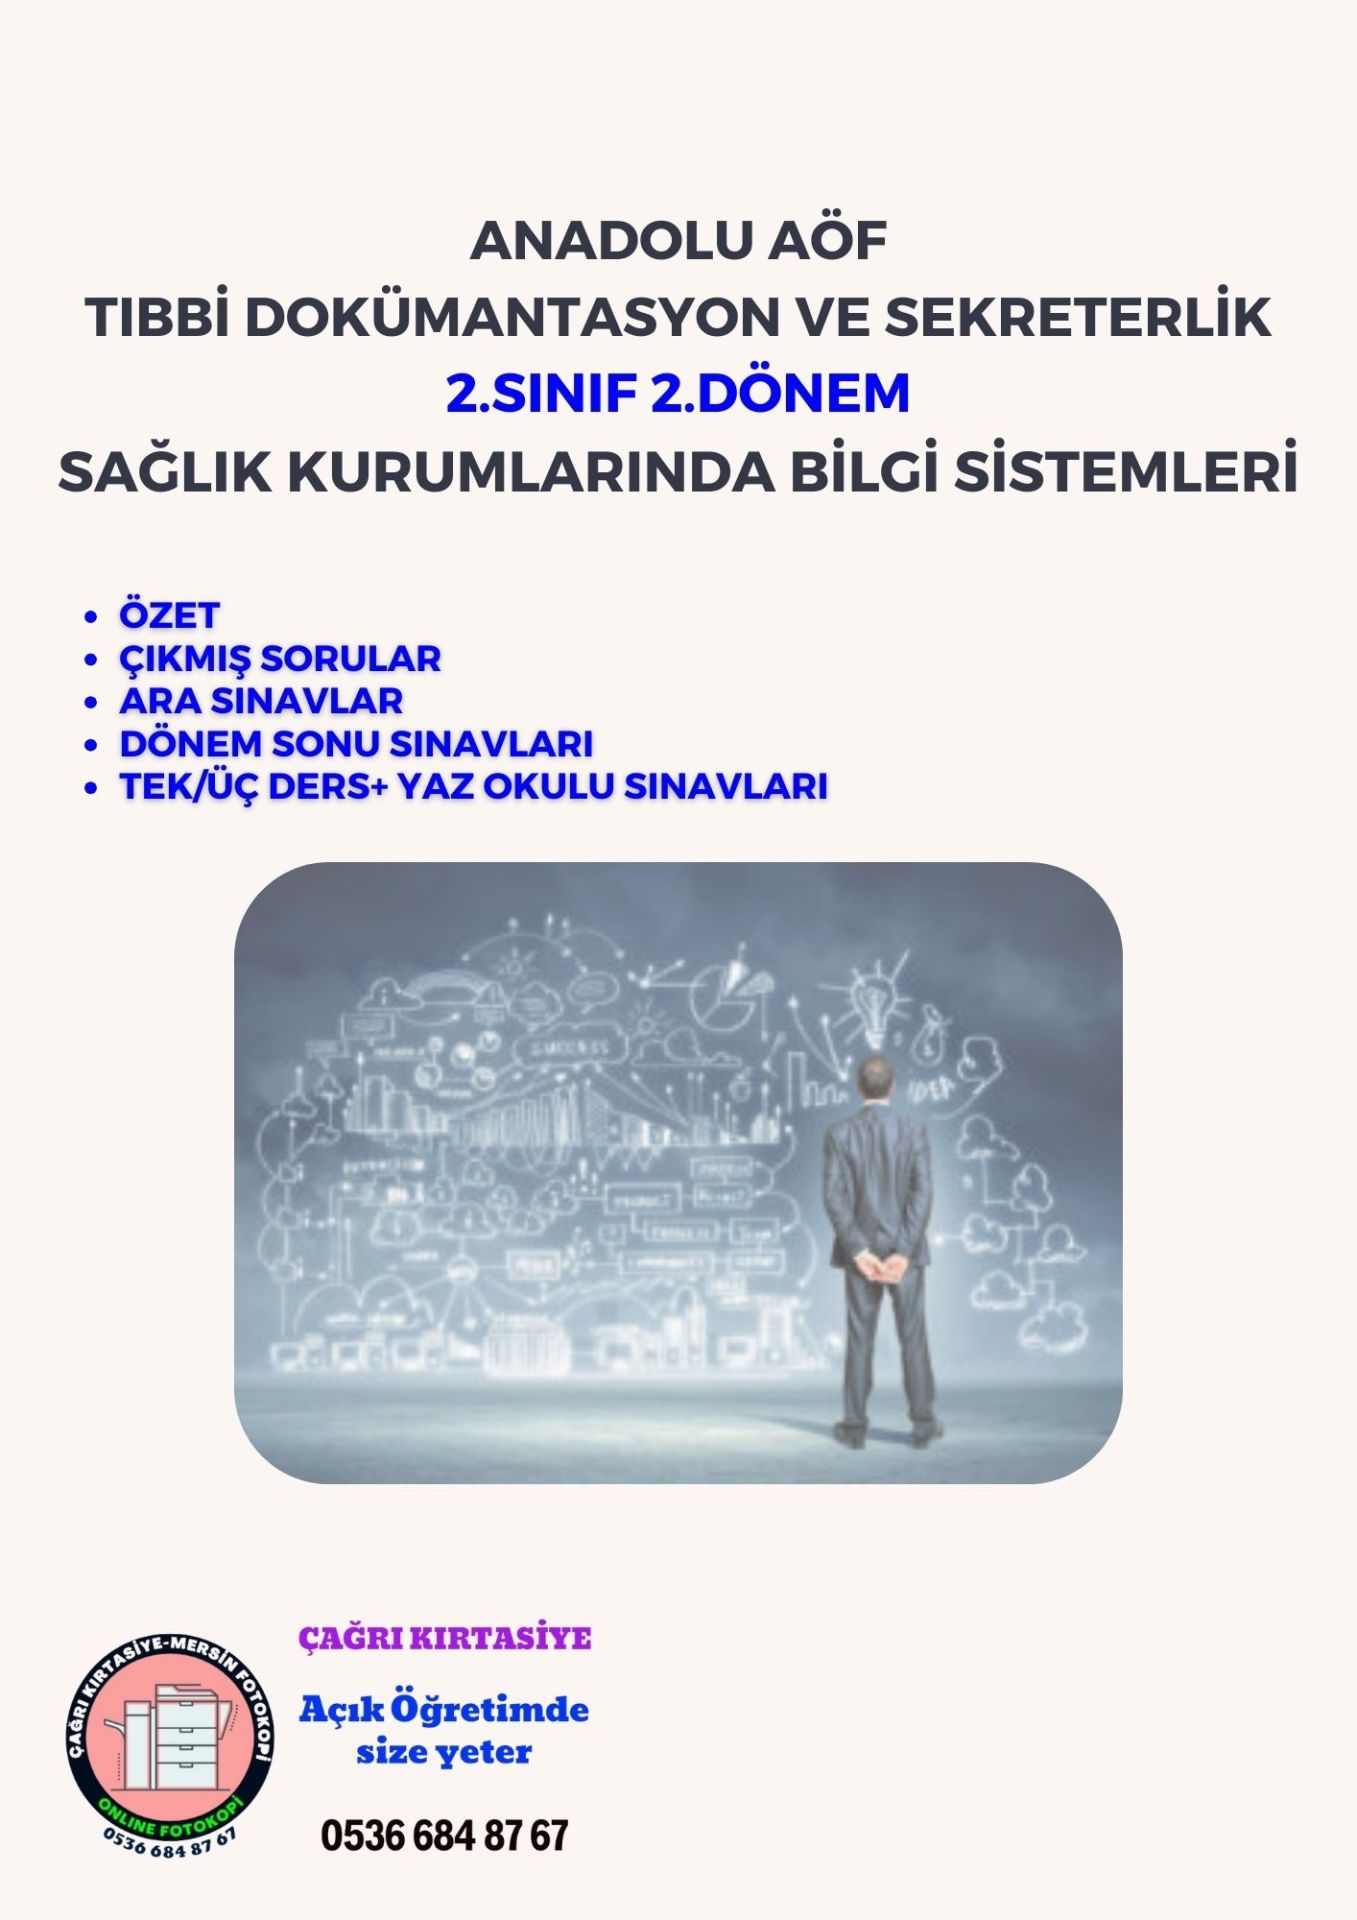 Anadolu Aöf Tds 2.Sınıf Sağlık Kurumlarında Bilgi Sistemleri